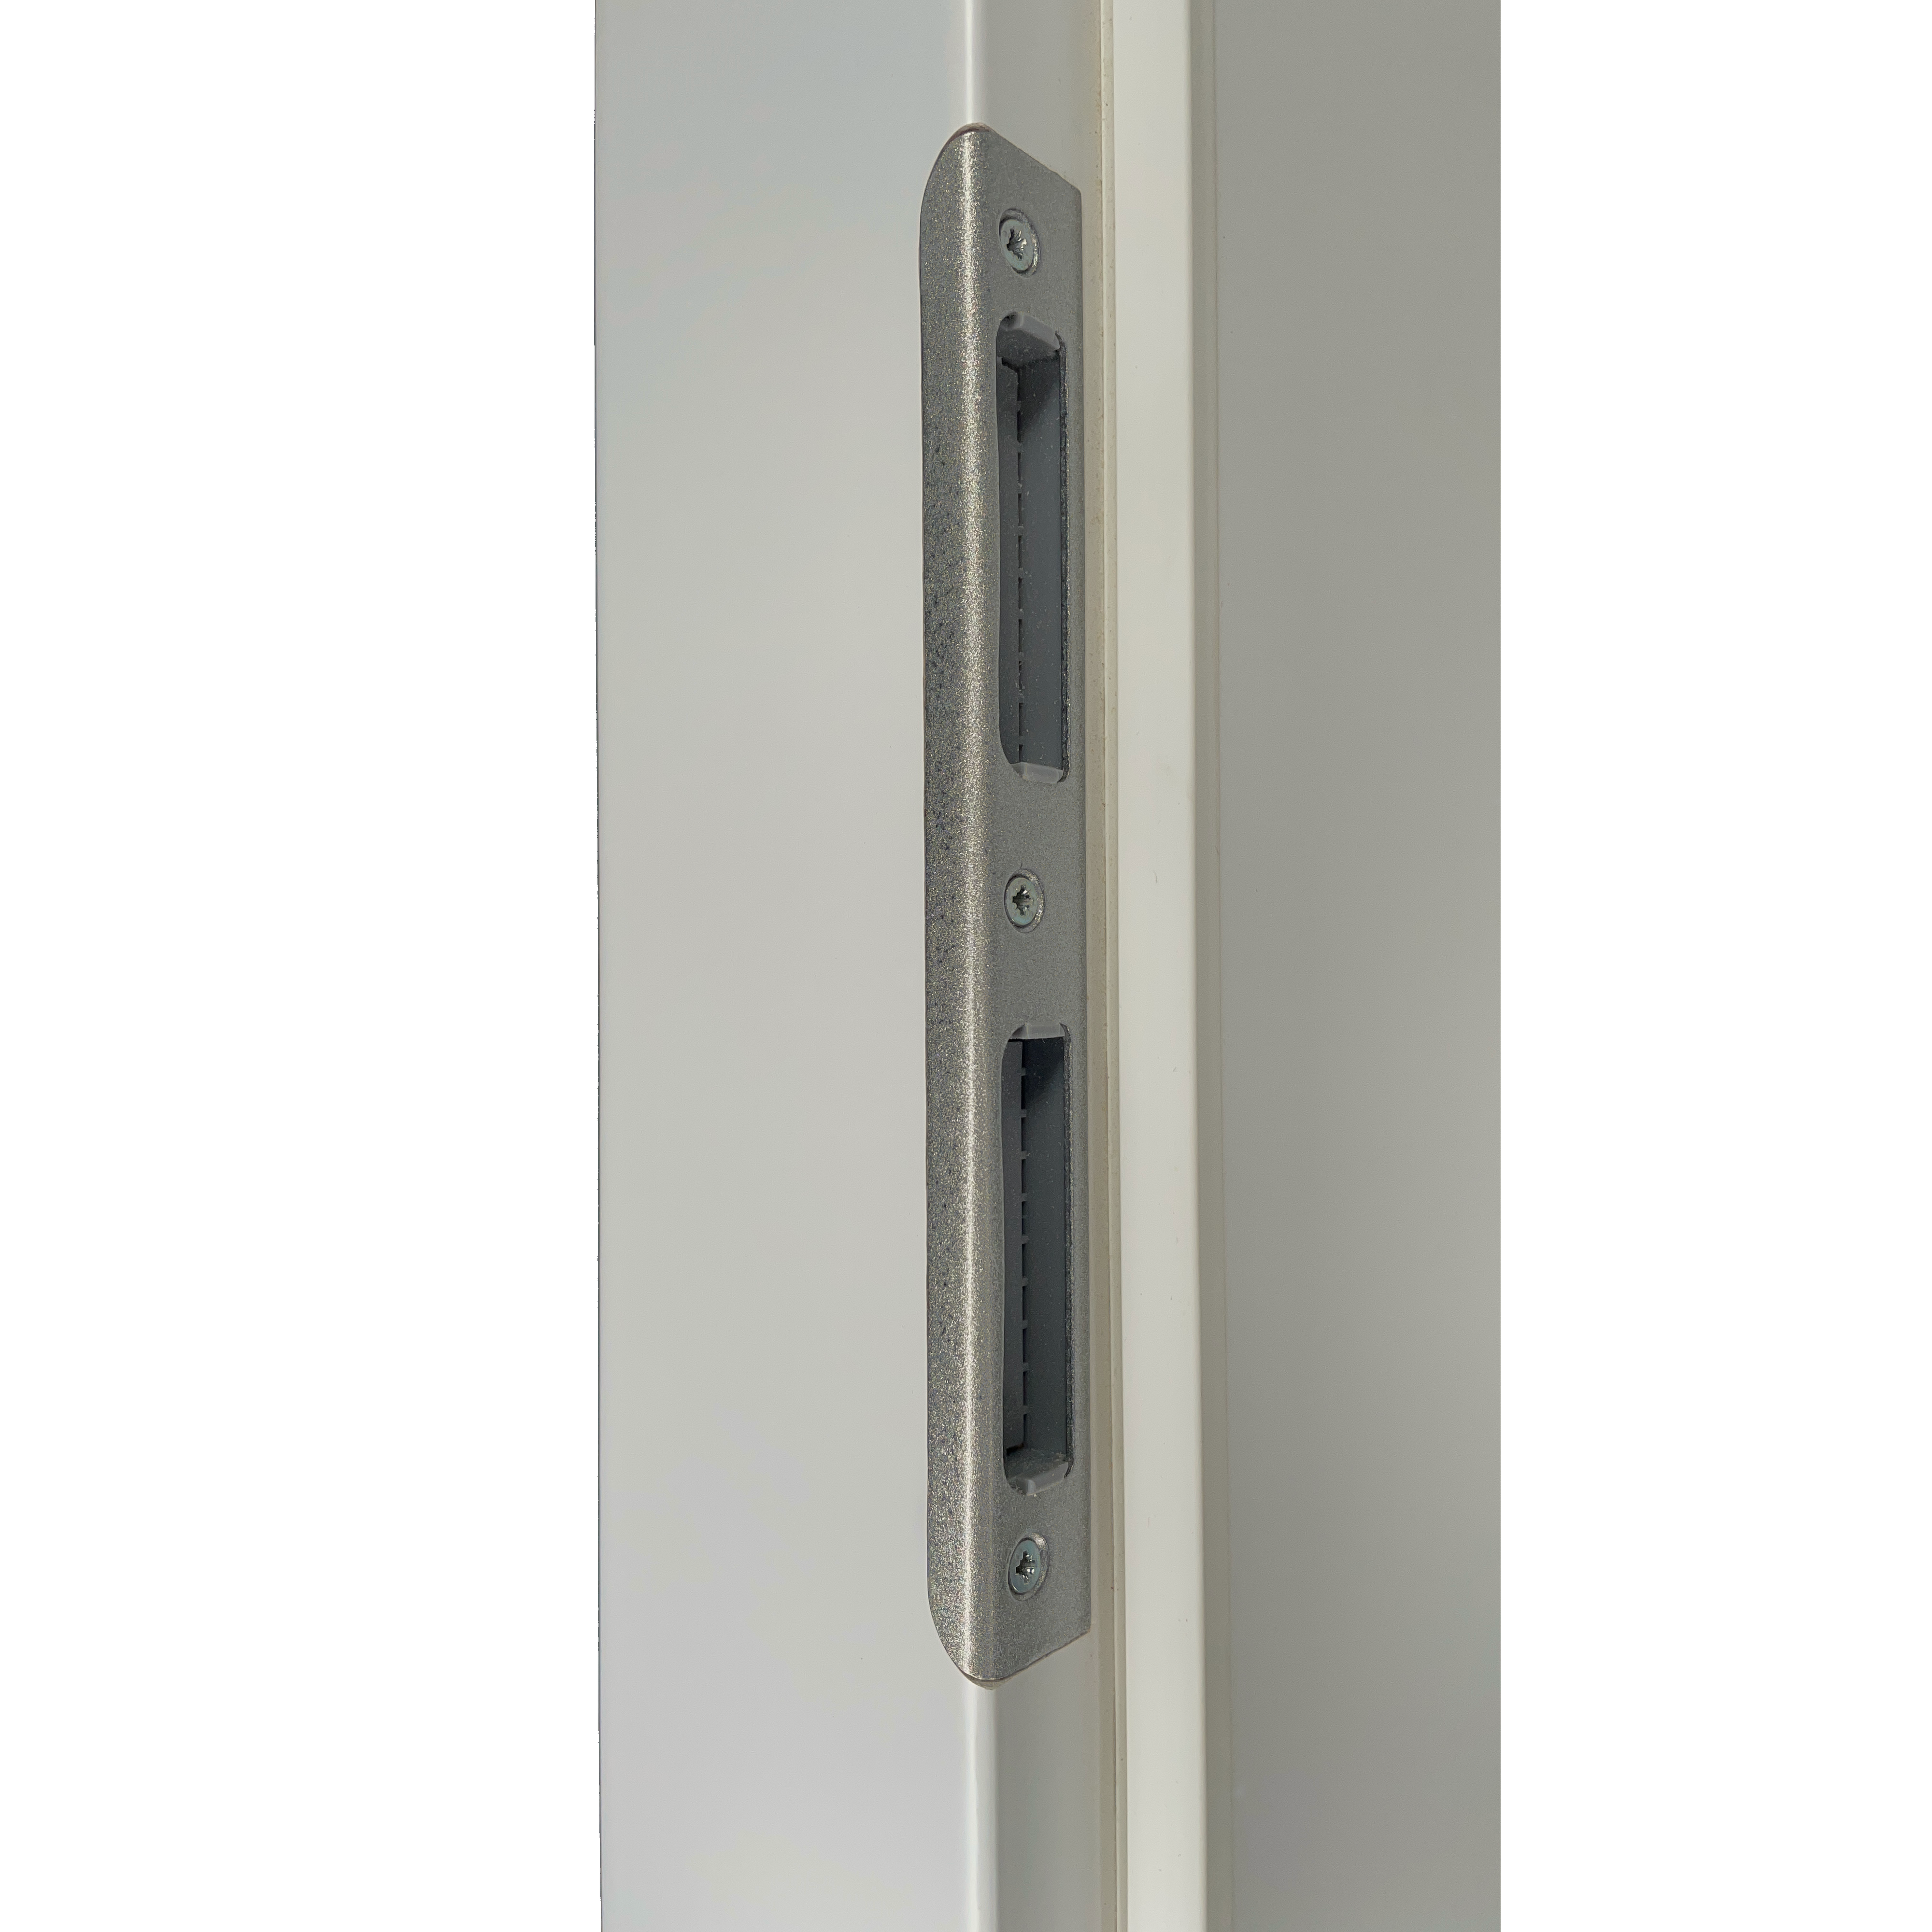 Zimmertür mit Zarge soft-weiß Stiltür mit 2 Kassetten und Lichtausschnitt Eckkante - Modell Stiltür K21LA